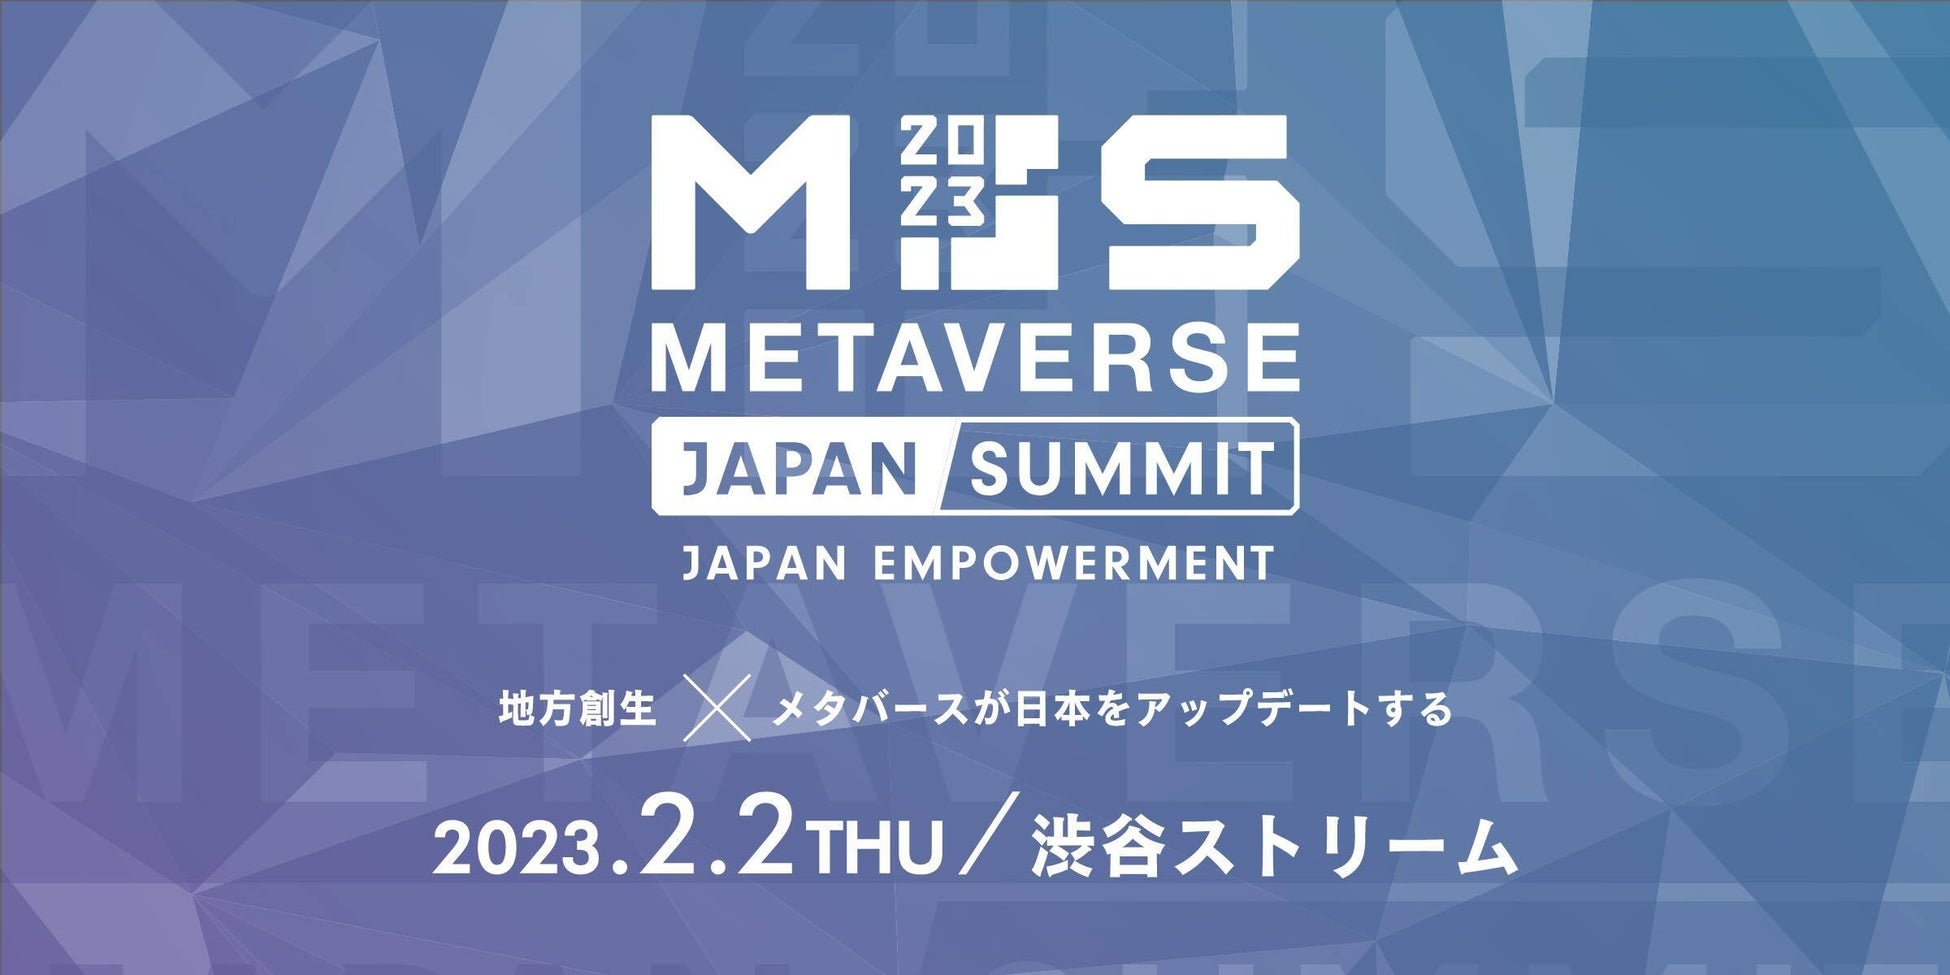 ワントゥーテン 、「地方創生 × メタバース」の未来と課題を議論し学ぶ大規模カンファレンス「Japan Empowerment Summit 2023」に出展のサブ画像1